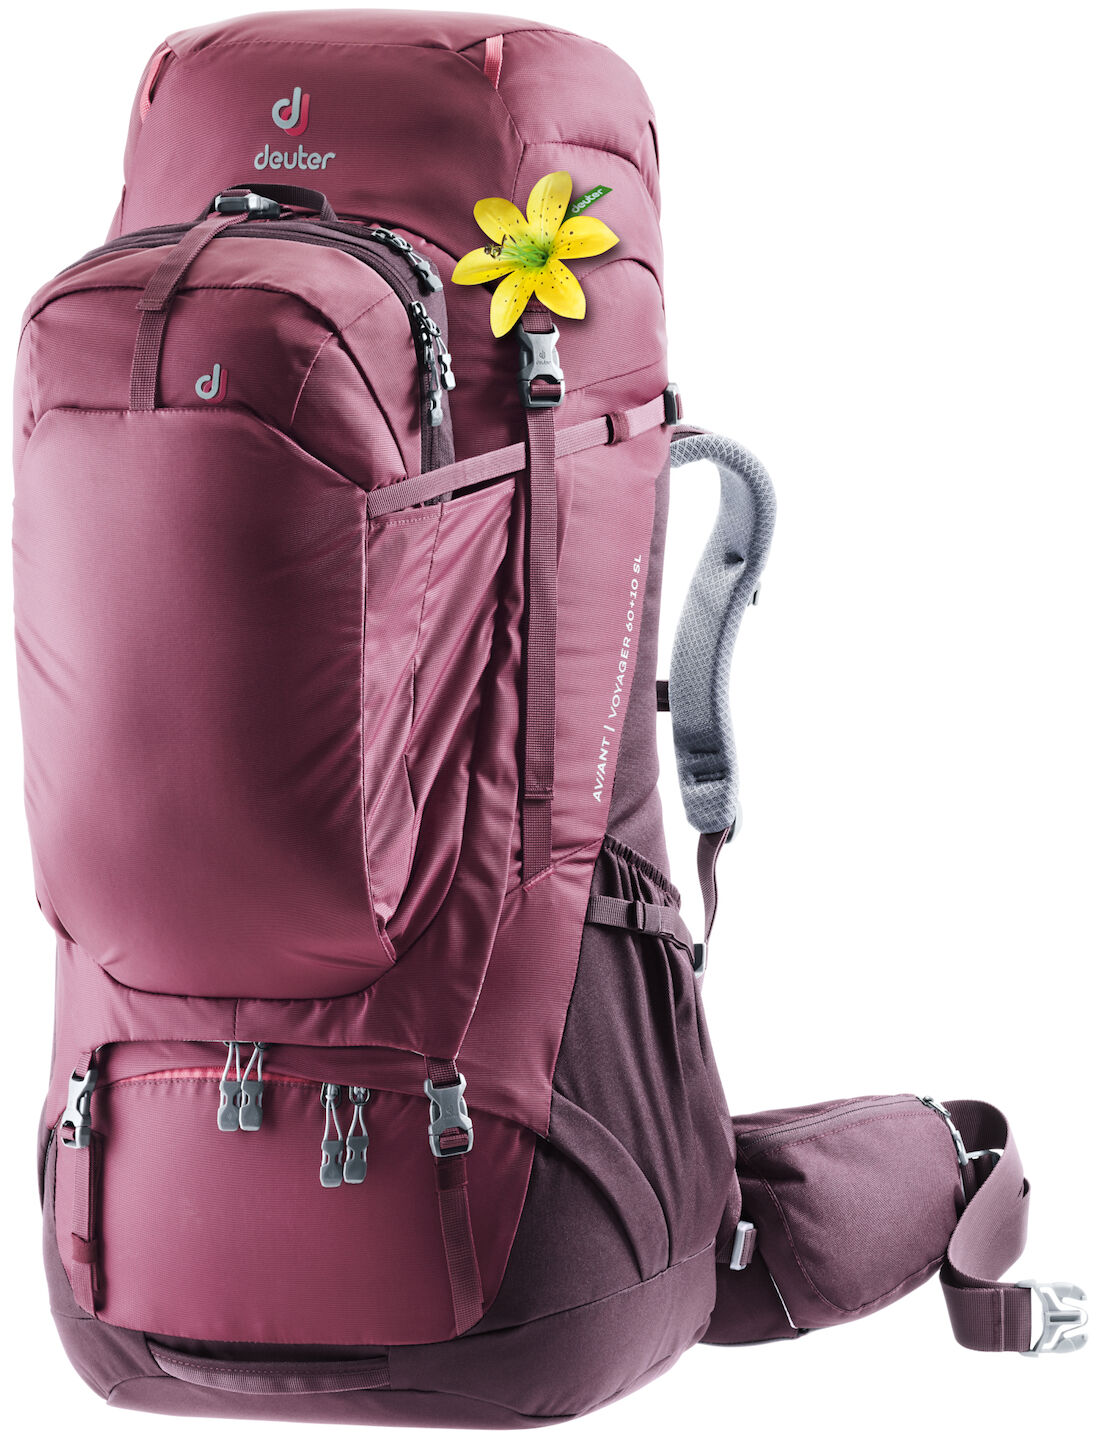 Deuter Aviant Voyager 60+10 SL - Travel backpack - Women's